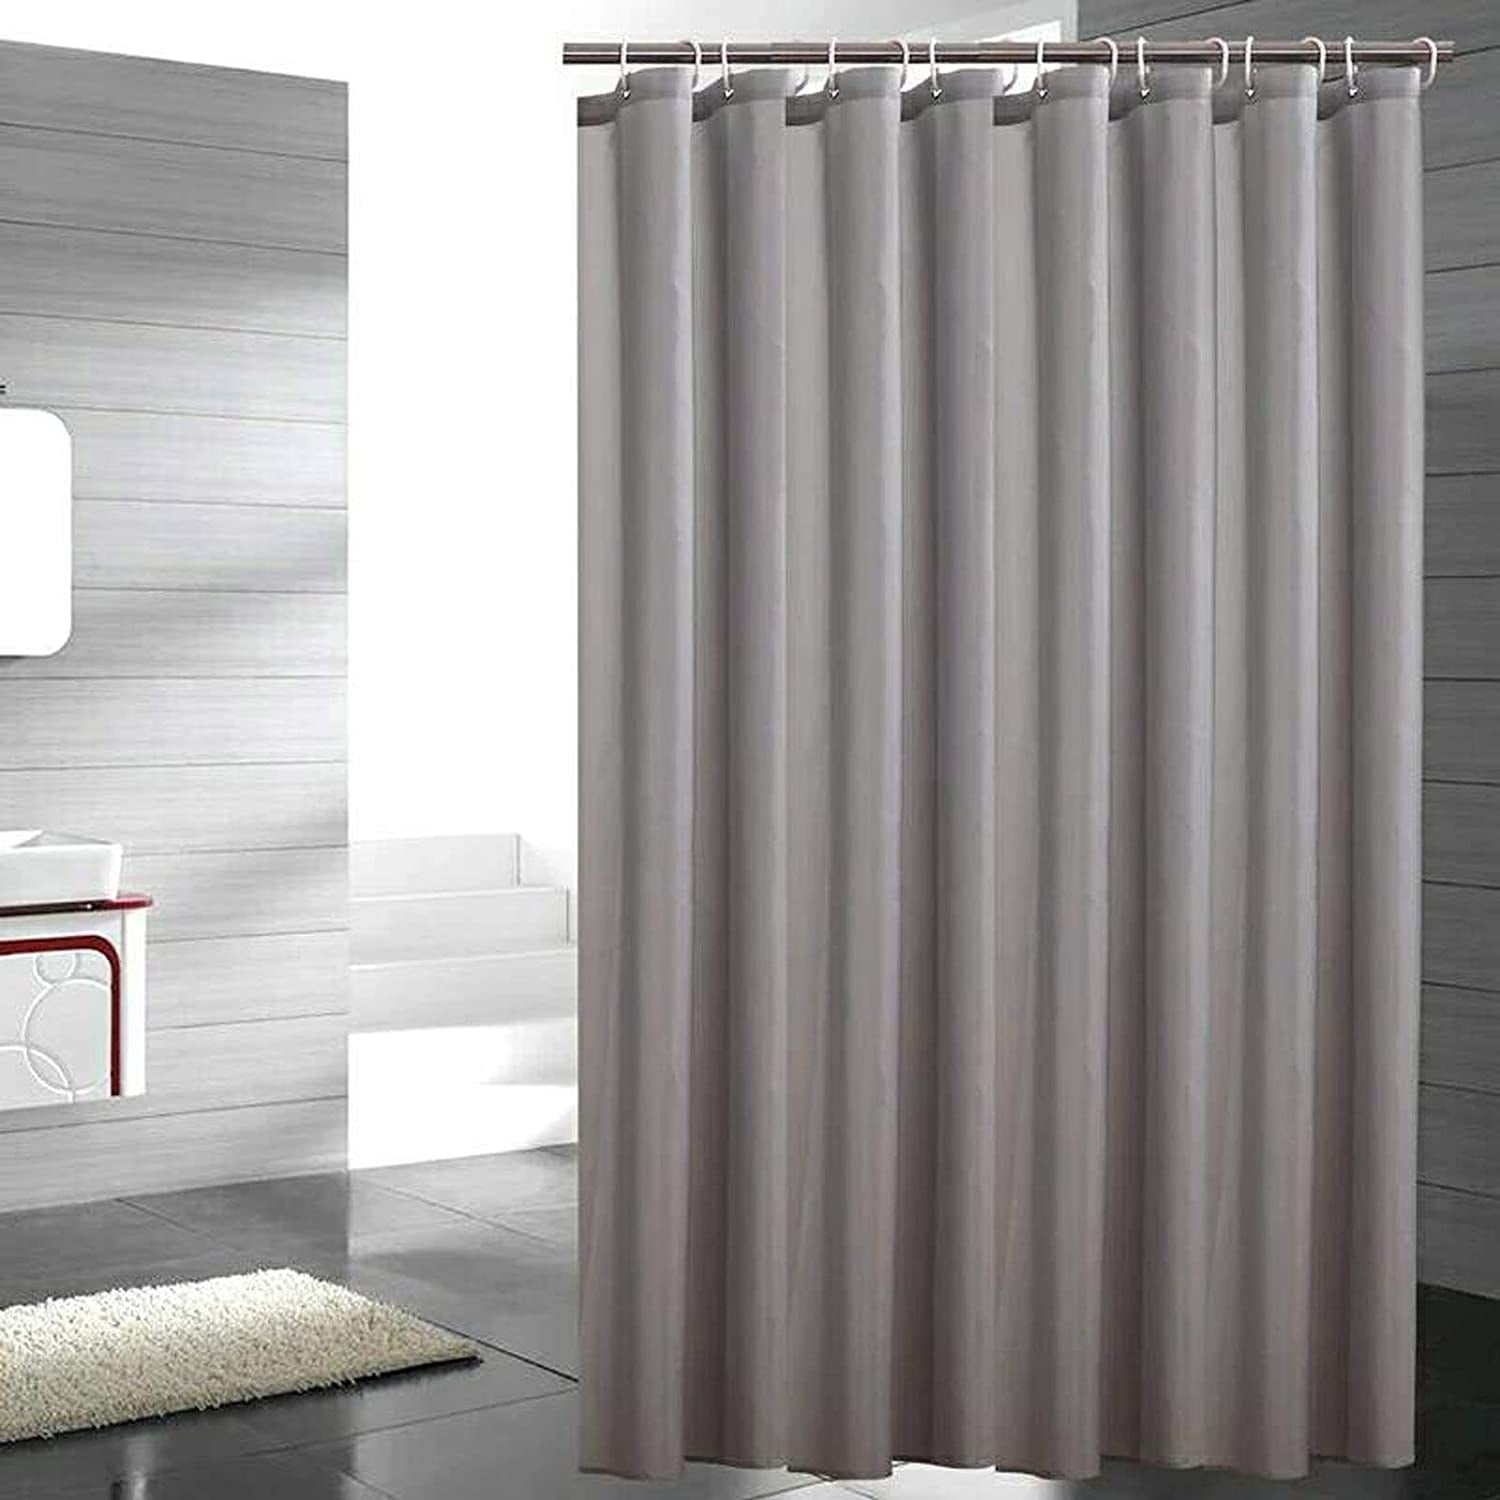 Hard Leaves Waterproof Bathroom Polyester Shower Curtain Liner Water Resistant 